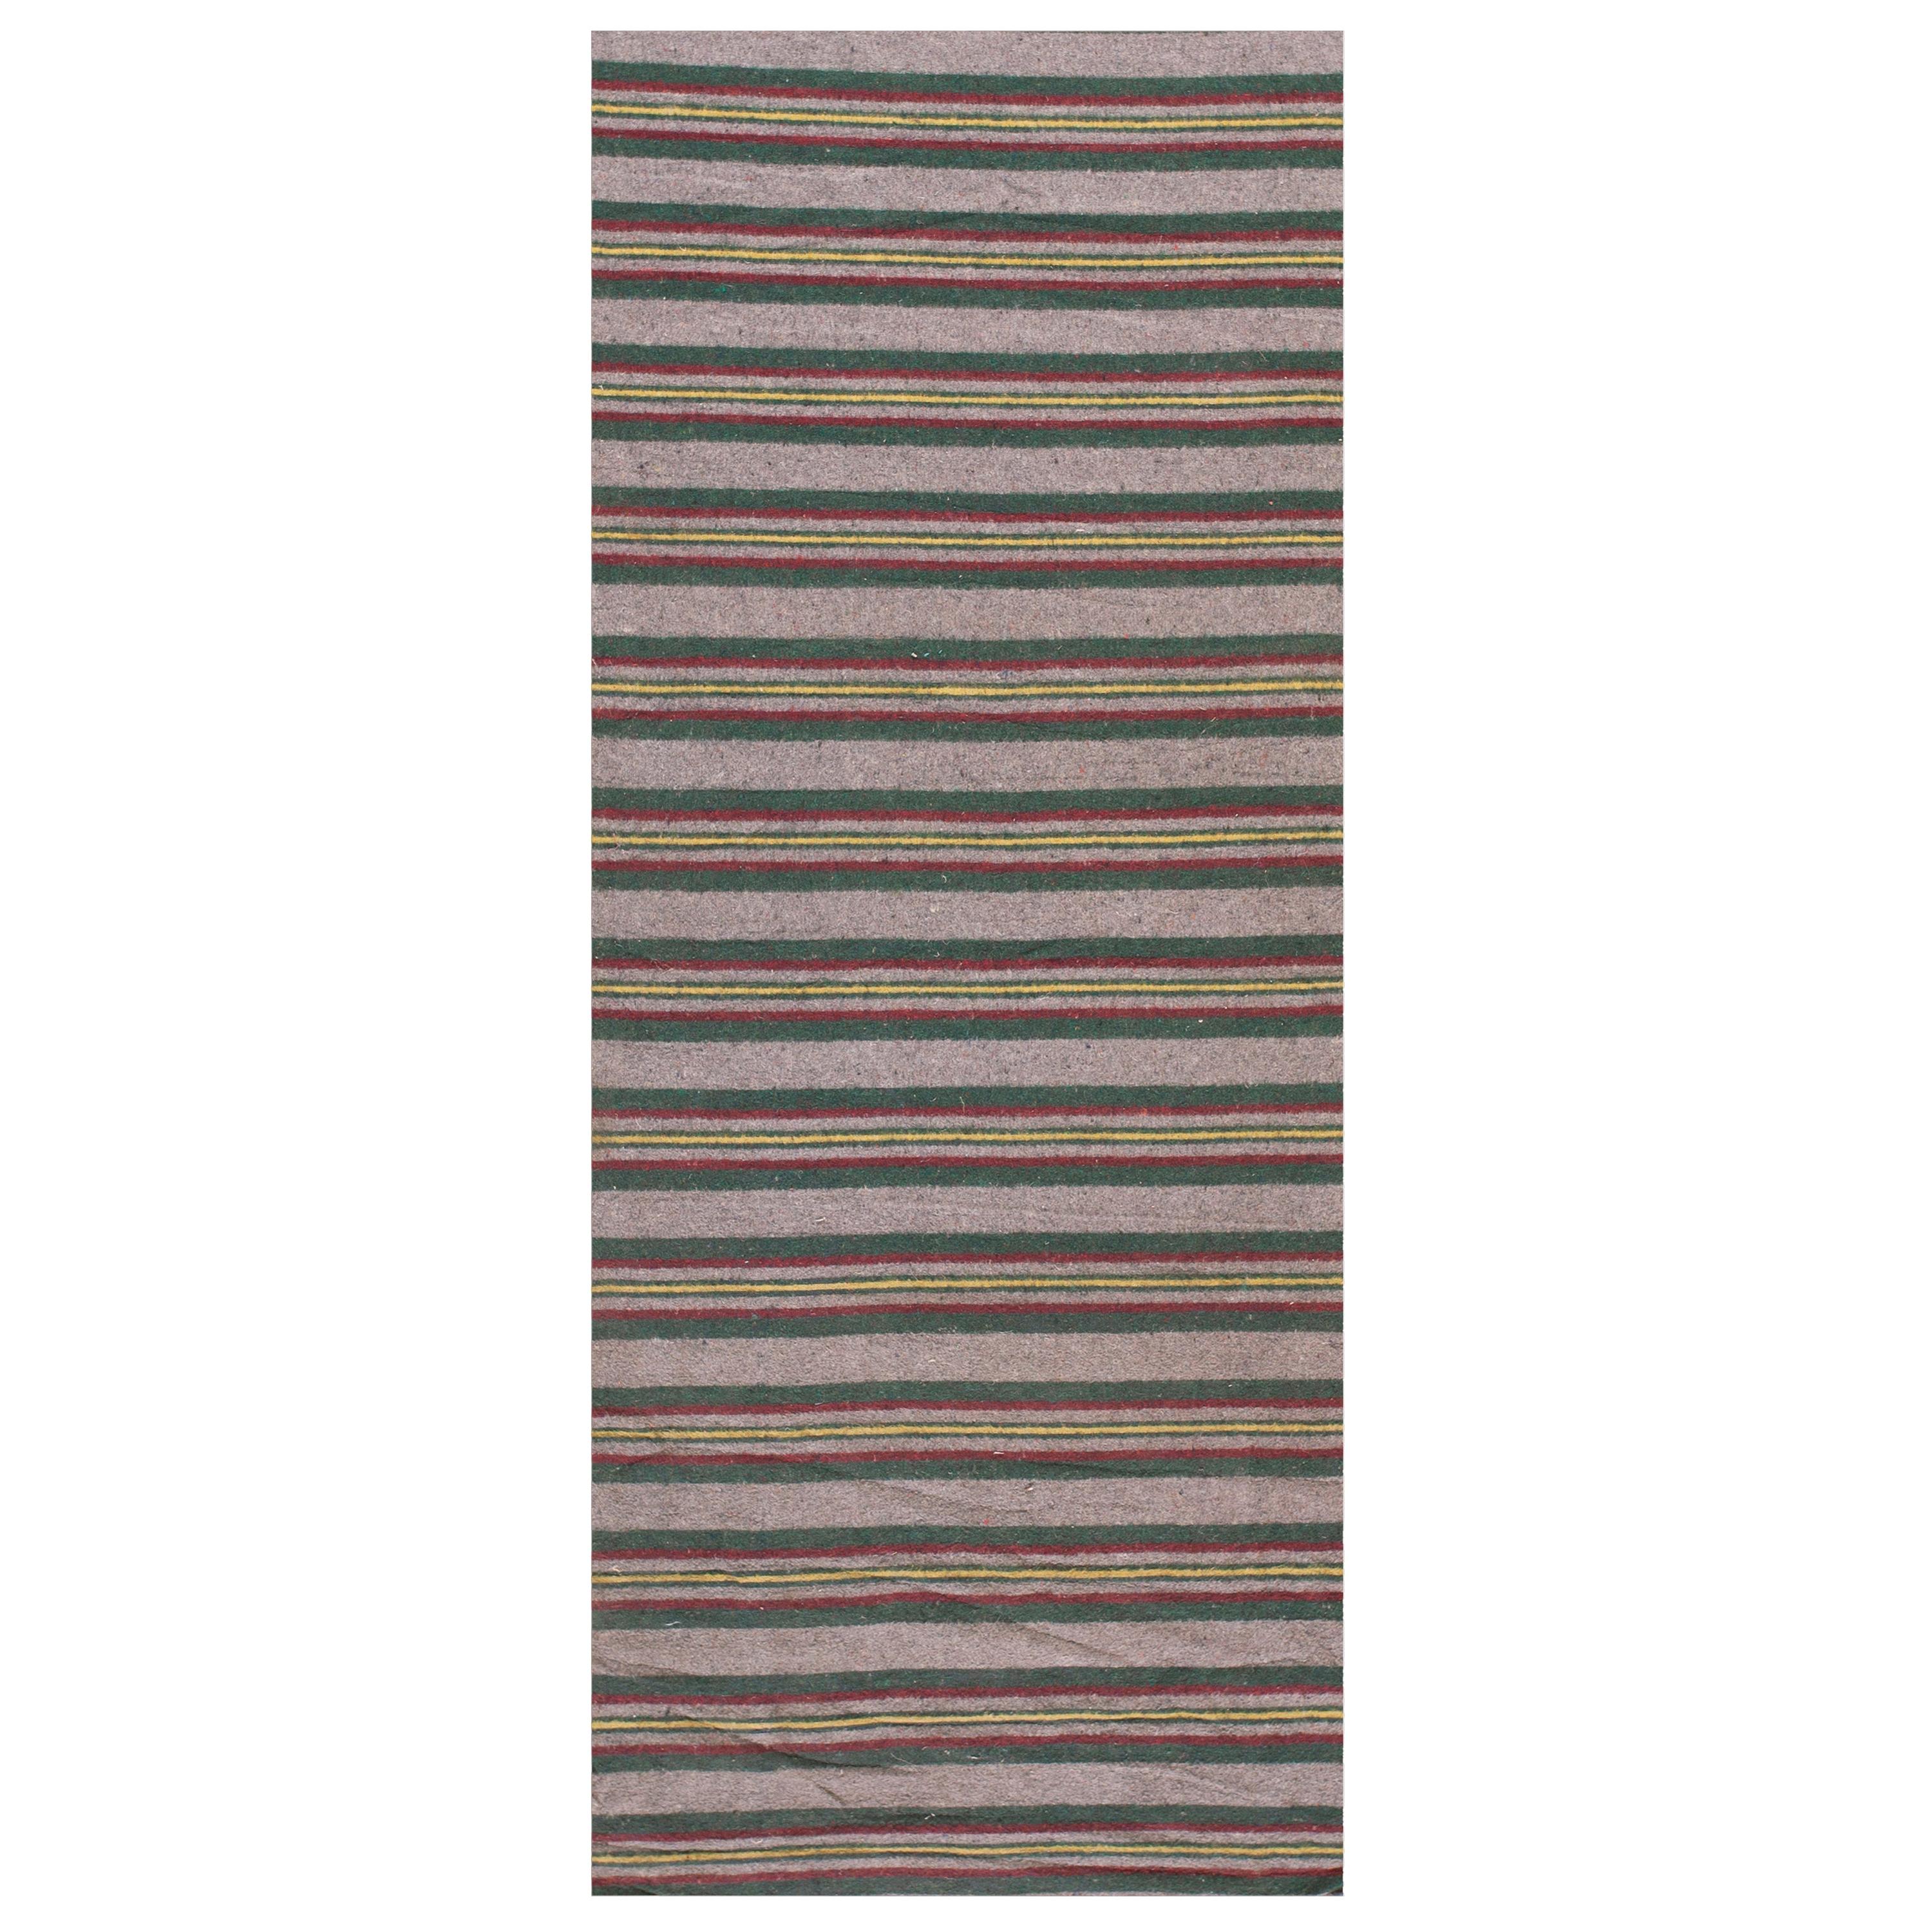 Early 20th Century American Felt Rag Rug ( 3' 2'' x 32'10'' - 97 x 1001 ) For Sale